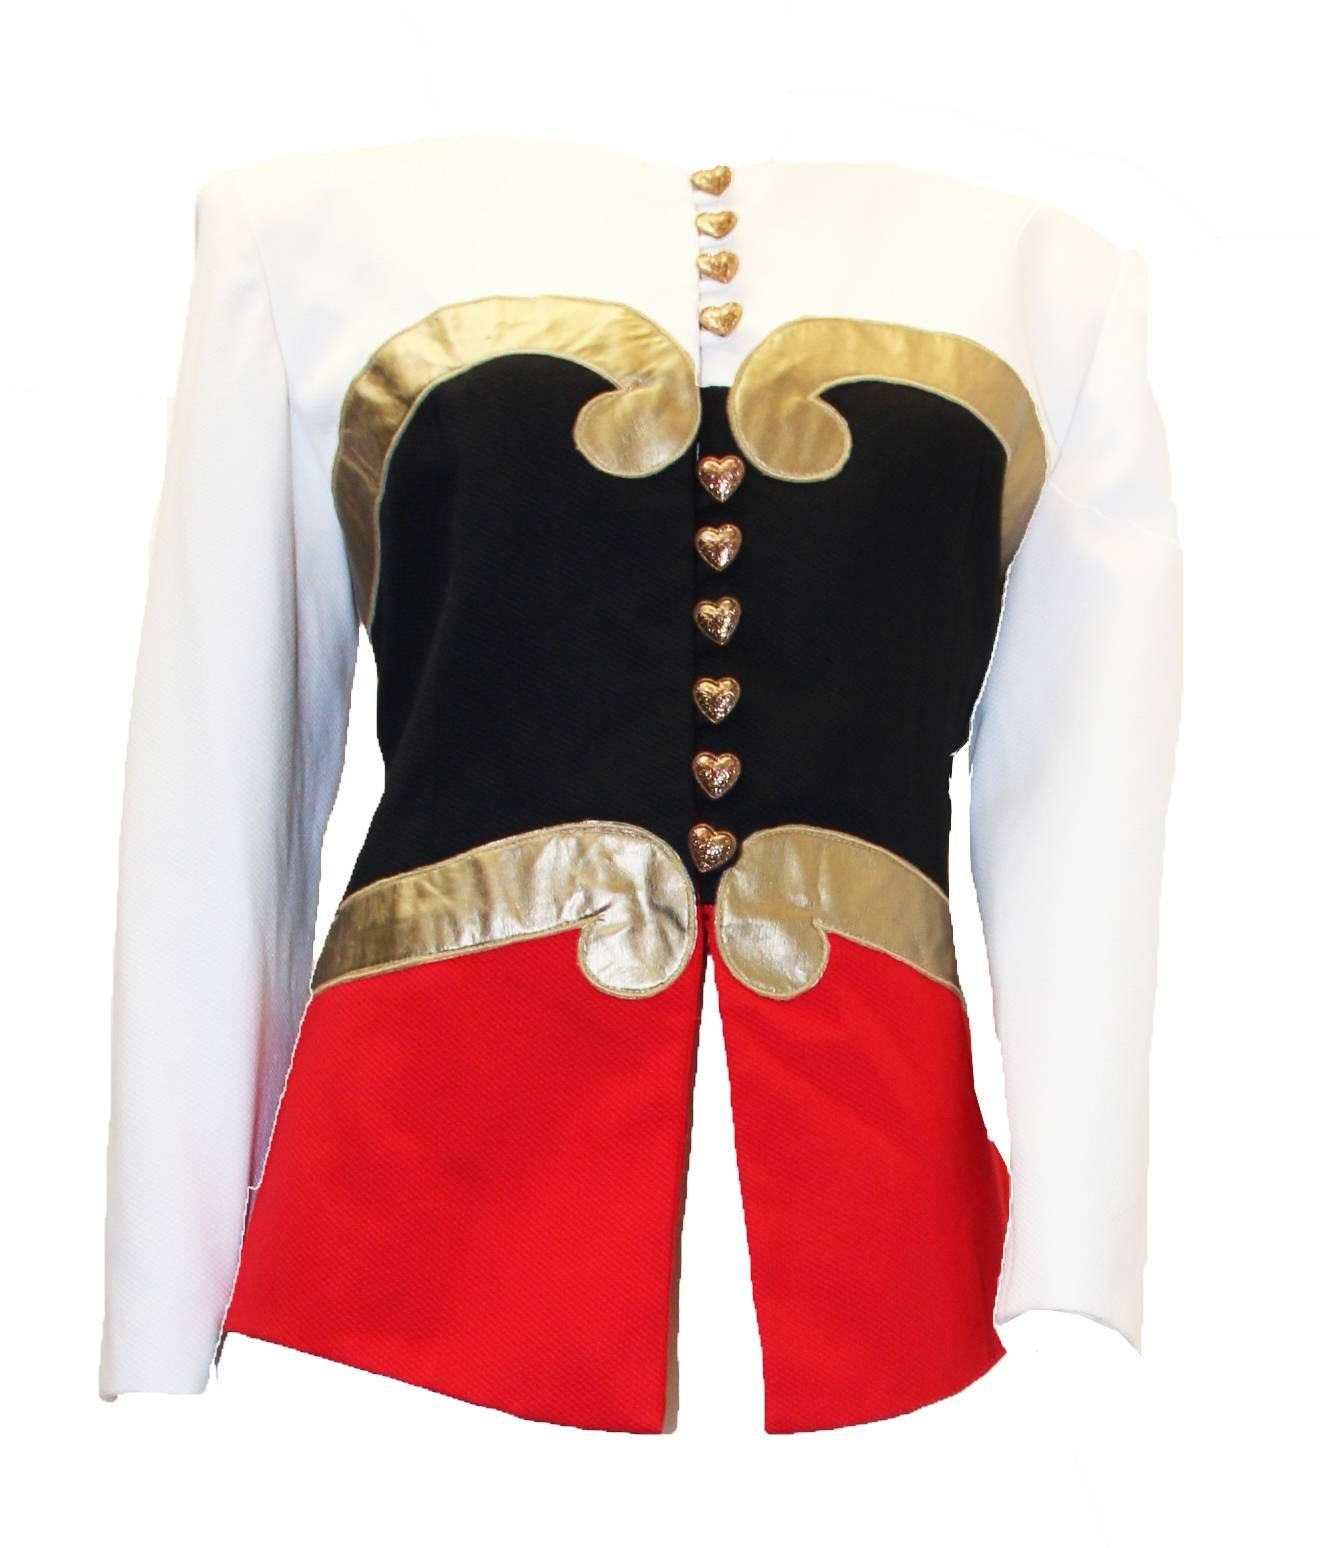 Schwarz-rot-weiße Jacke mit Goldapplikationen von Pierre Balmain aus den 1980er Jahren. 

Abmessungen:
Schultern: 17